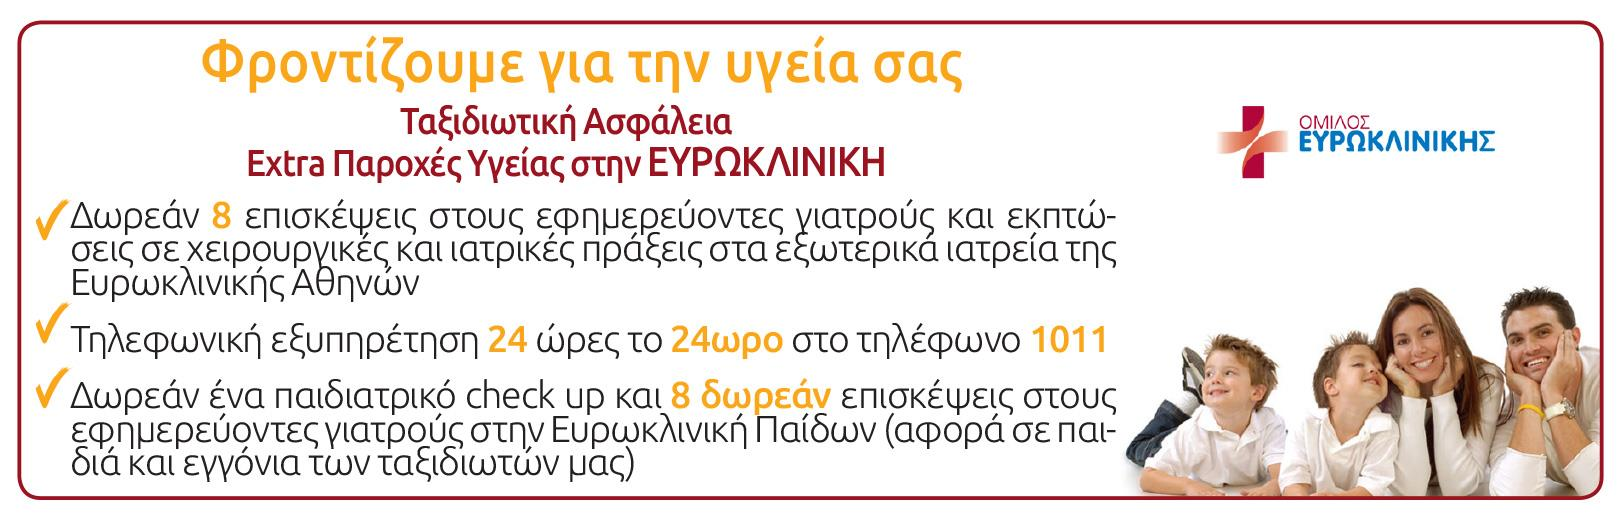 Σημείωση: Οι πτήσεις Αθήνα-Ζάγκρεμπ και Ζάγκρεμπ-Αθήνα πραγματοποιούνται μέσω Ντουμπρόβνικ, όπου γίνεται υποχρεωτικά αποβίβαση από το αεροπλάνο για έλεγχο διαβατηρίων στο Ντουμπρόβνικ και κατόπιν